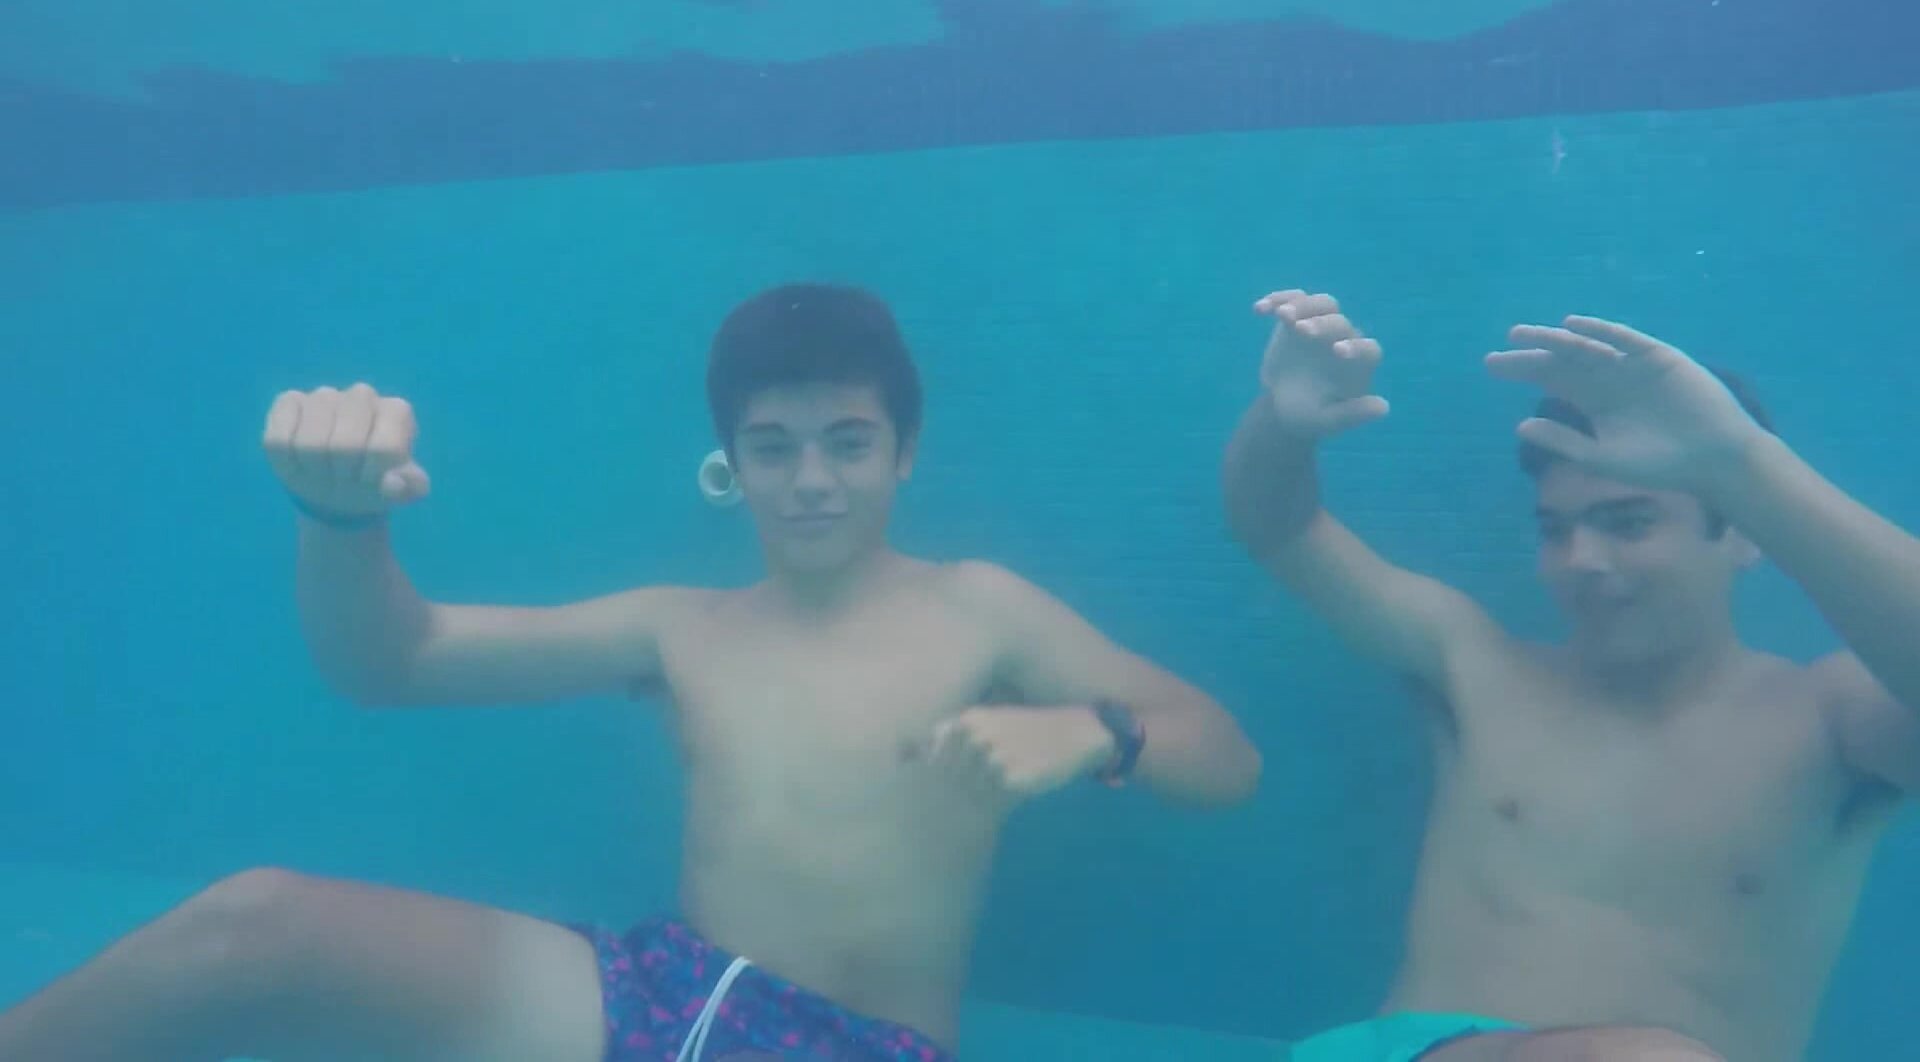 Barefaced buddies dancing underwater in pool